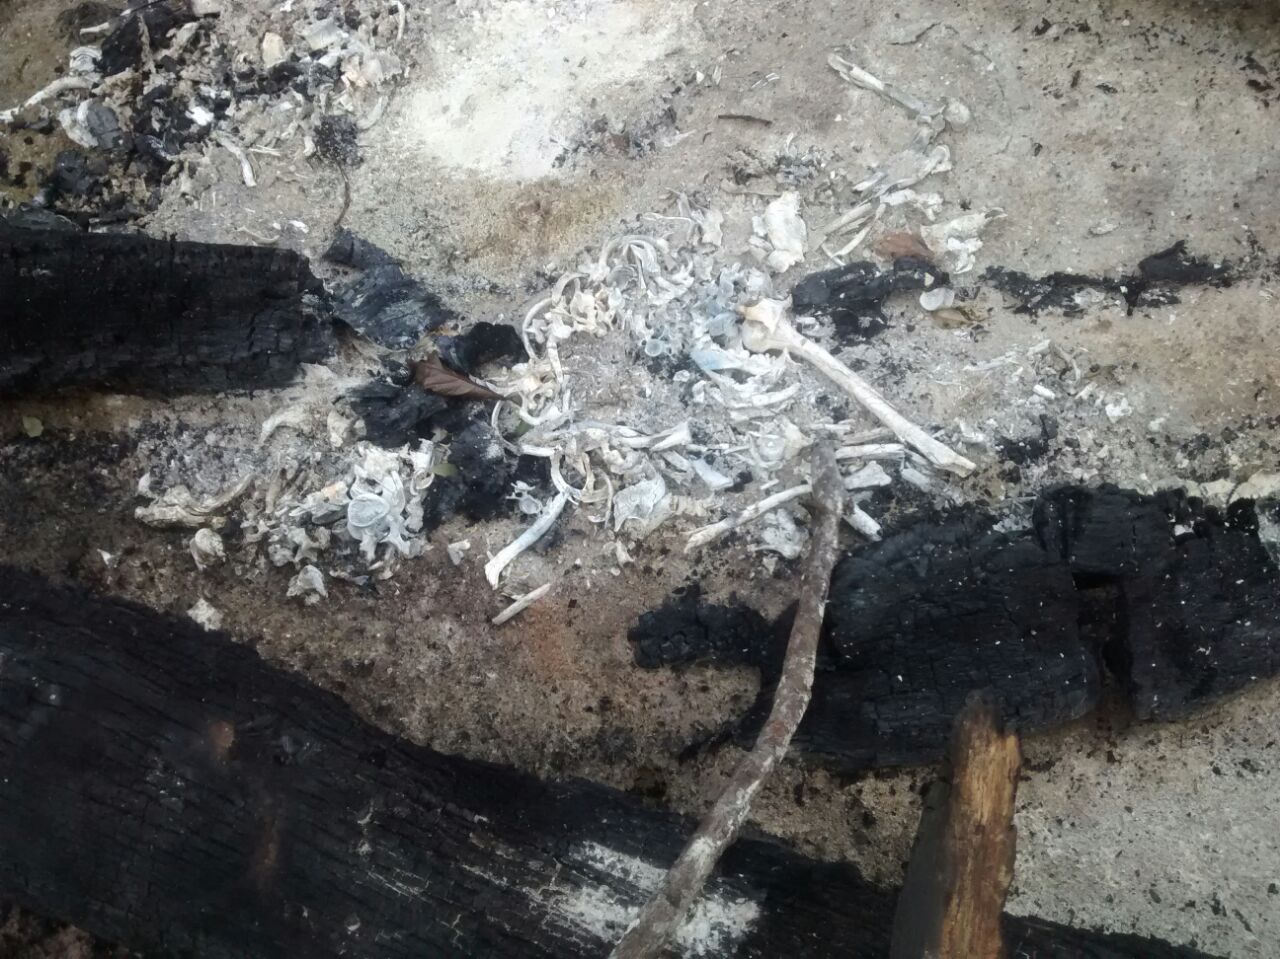 FOTO 17 - El quemadero, lugar donde incineraban a sus victimas, la banda criminal, Los Sanguinarios de la Pampa.